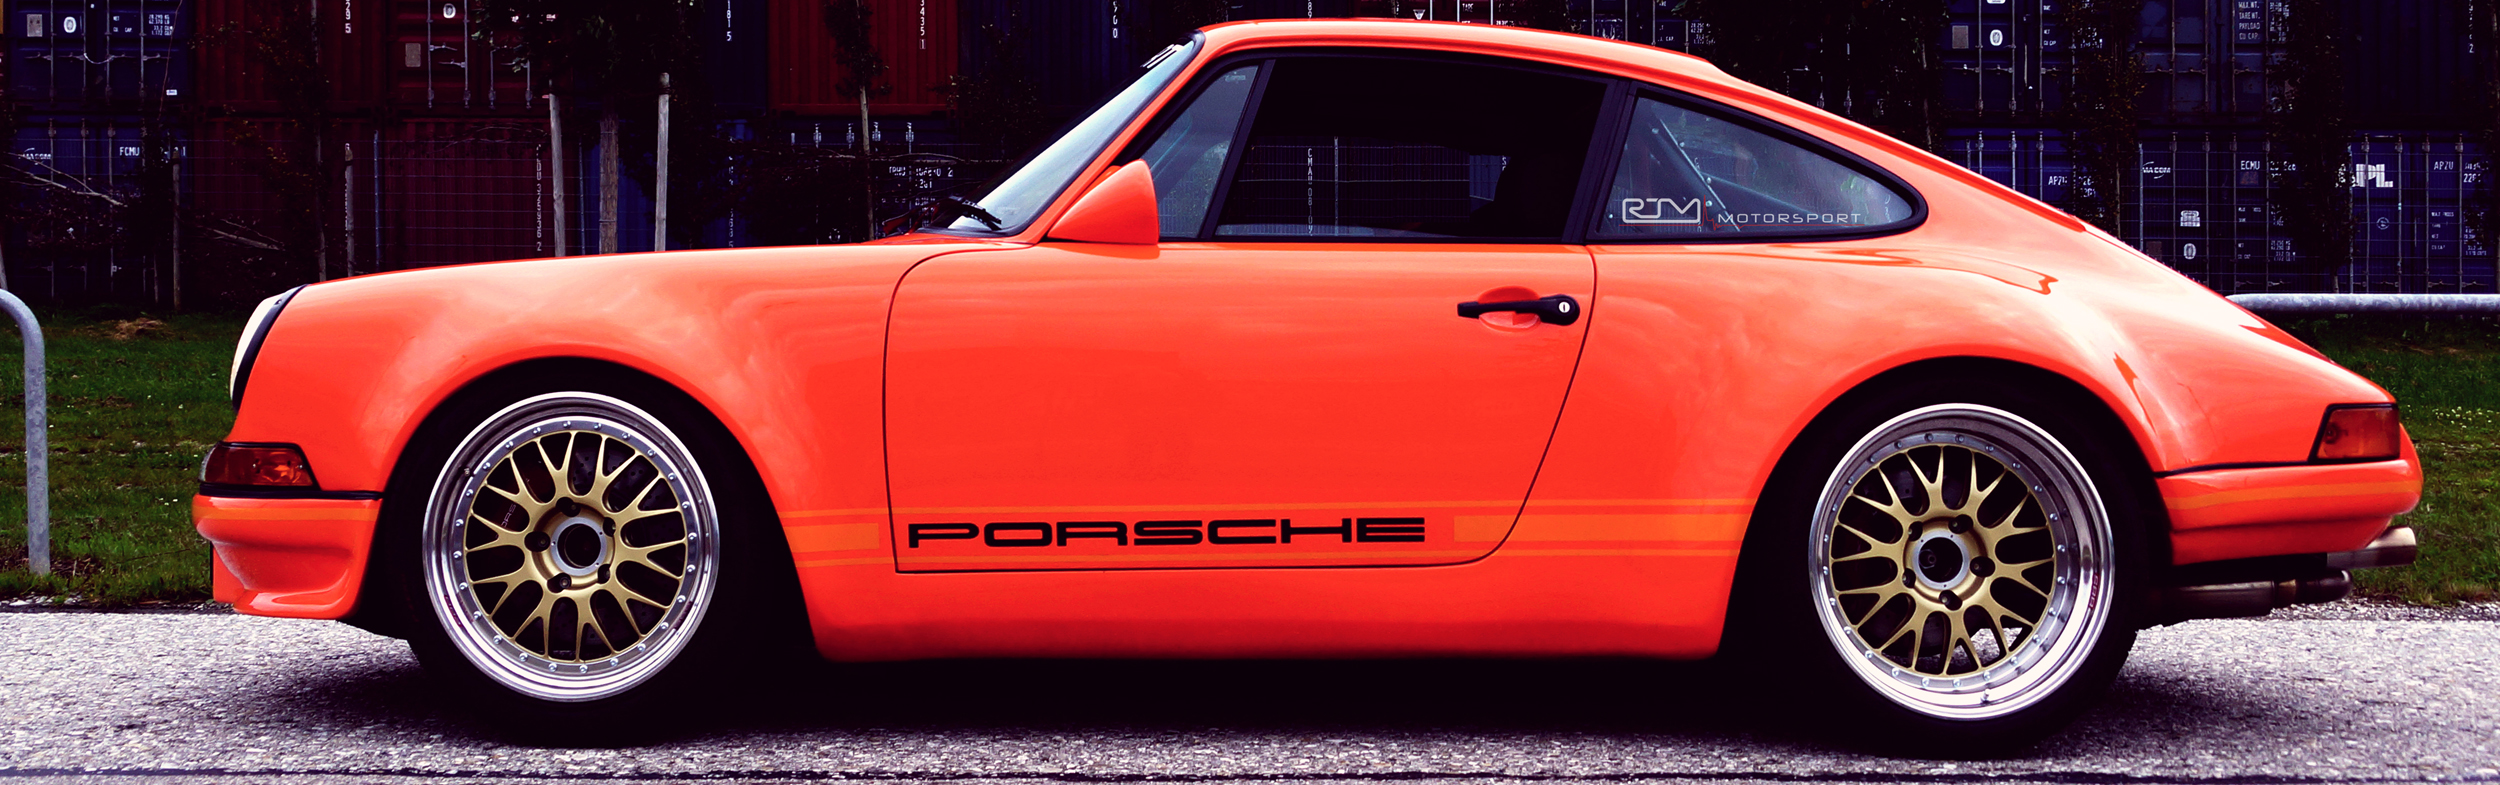 Porsche F-Modell